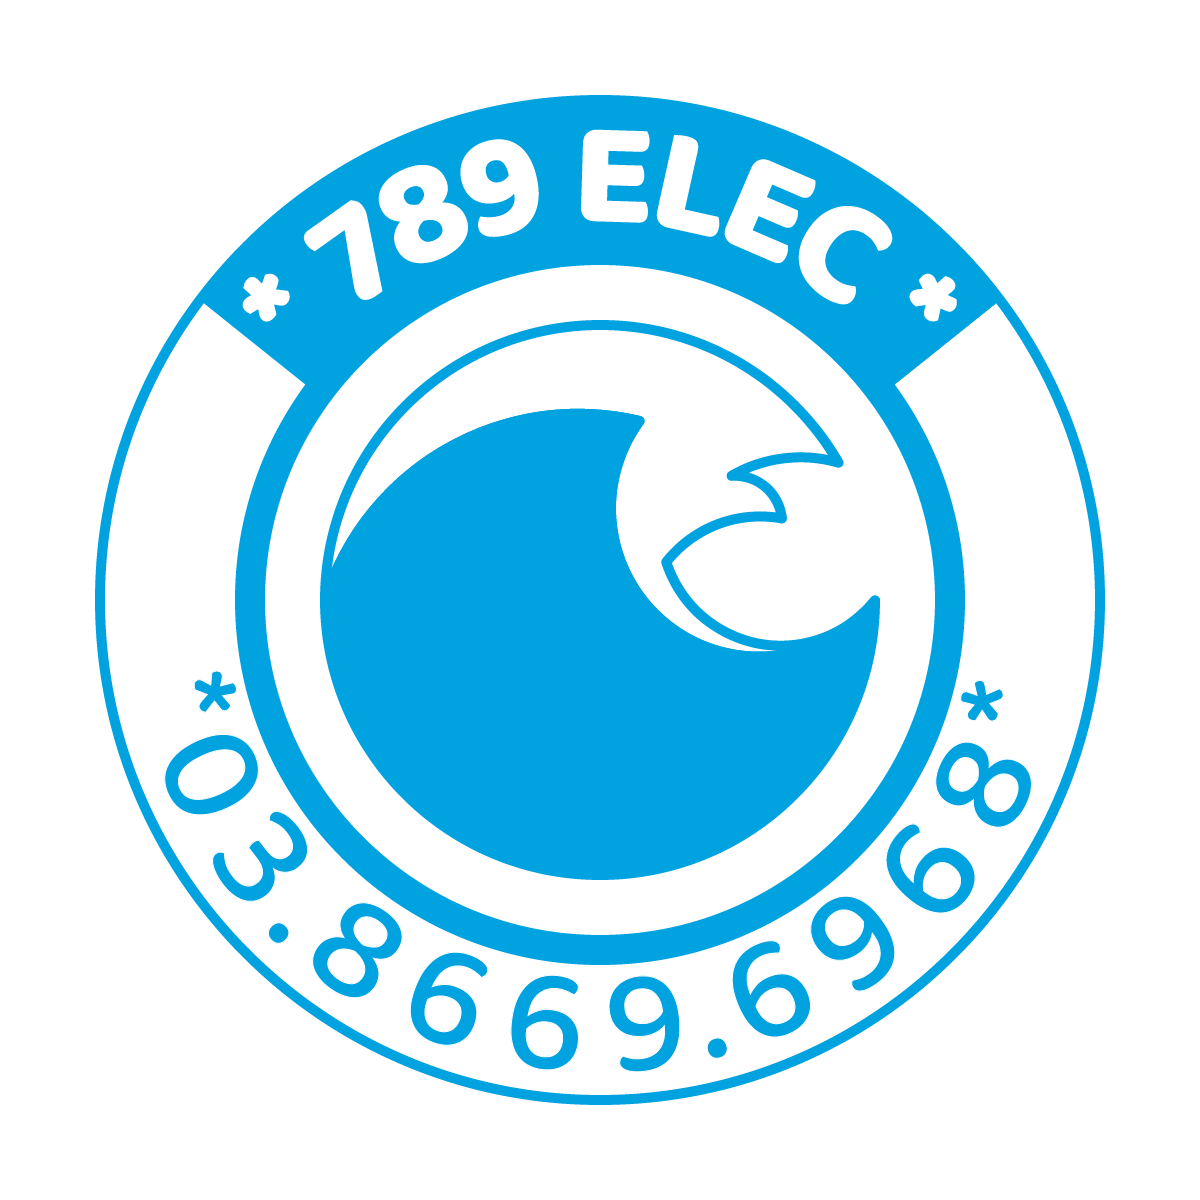 789 ELEC